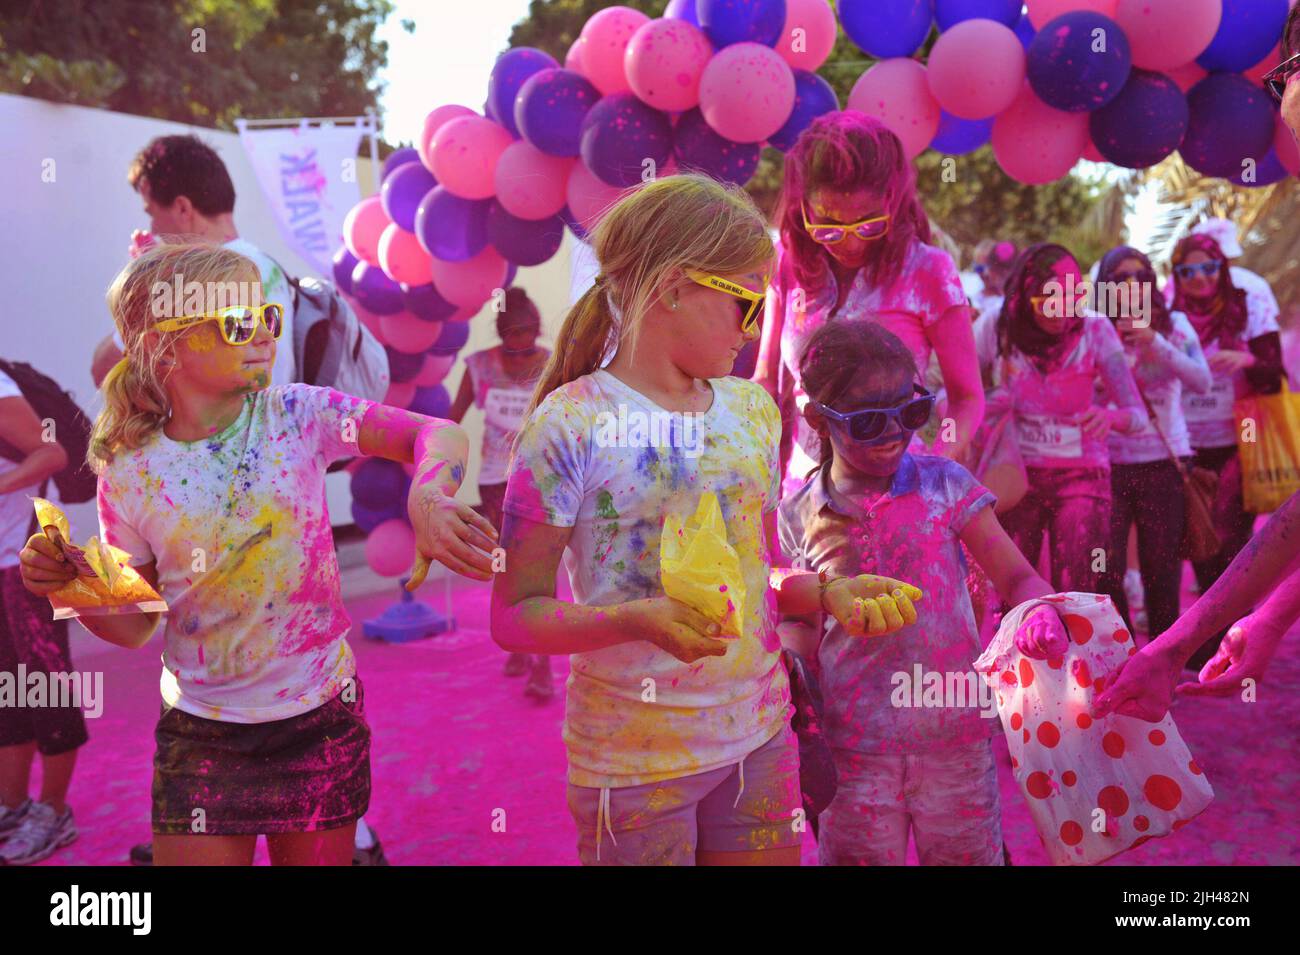 Chicas jóvenes rubias con tonos amarillos se detienen para agarrar polvo más coloreado junto a un arco de globo rosa en el Paseo del Color en Dubai, Emiratos Árabes Unidos. Foto de stock